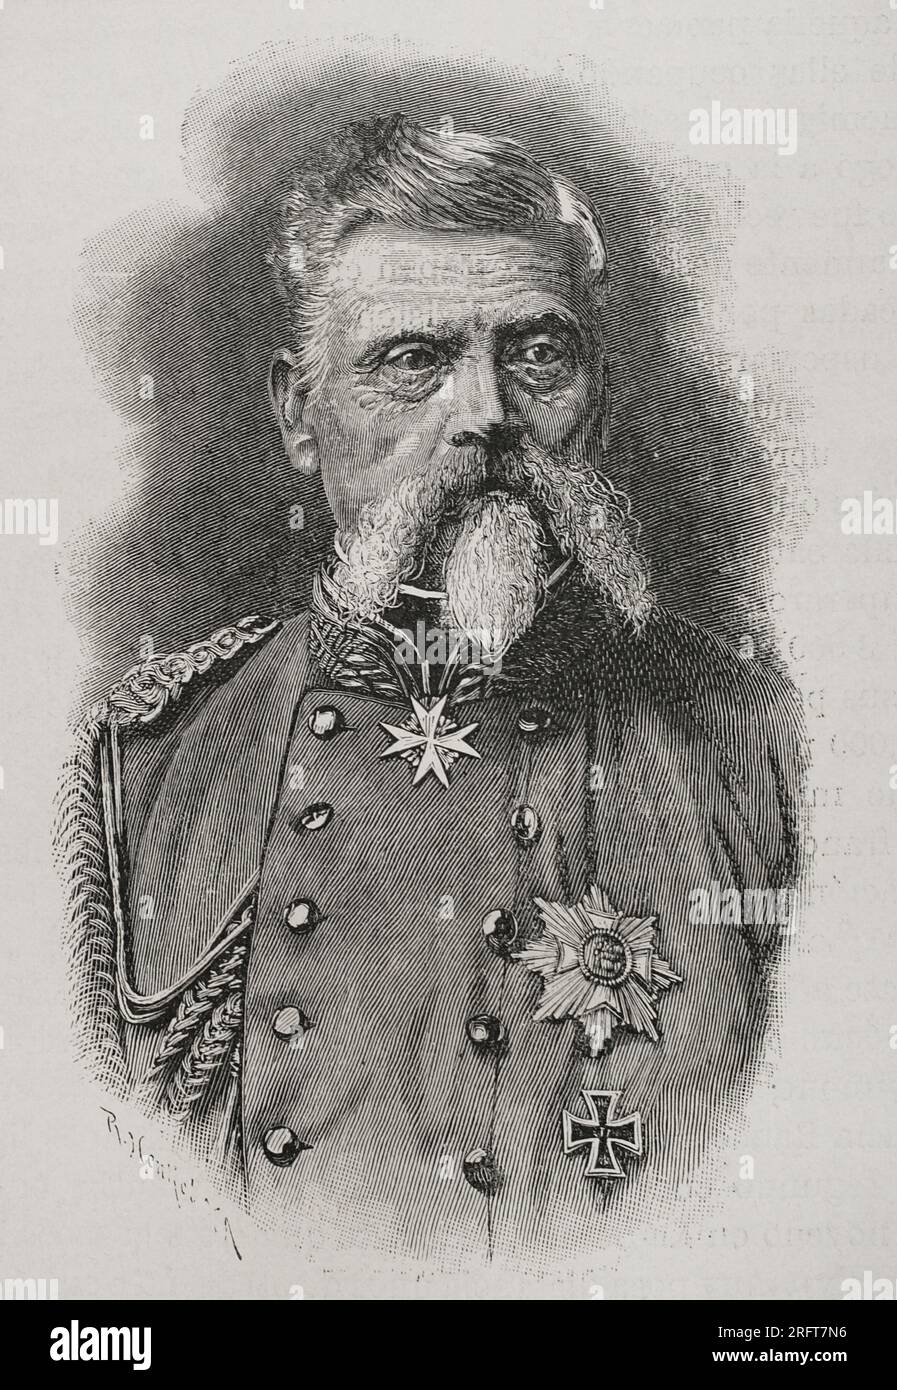 Ludwig von der Tann (1815-1881). Bayerischer General. Porträt. Gravur. "Historia de la Guerra Franco-Alemana de 1870-1871". Veröffentlicht in Barcelona 1891. Stockfoto